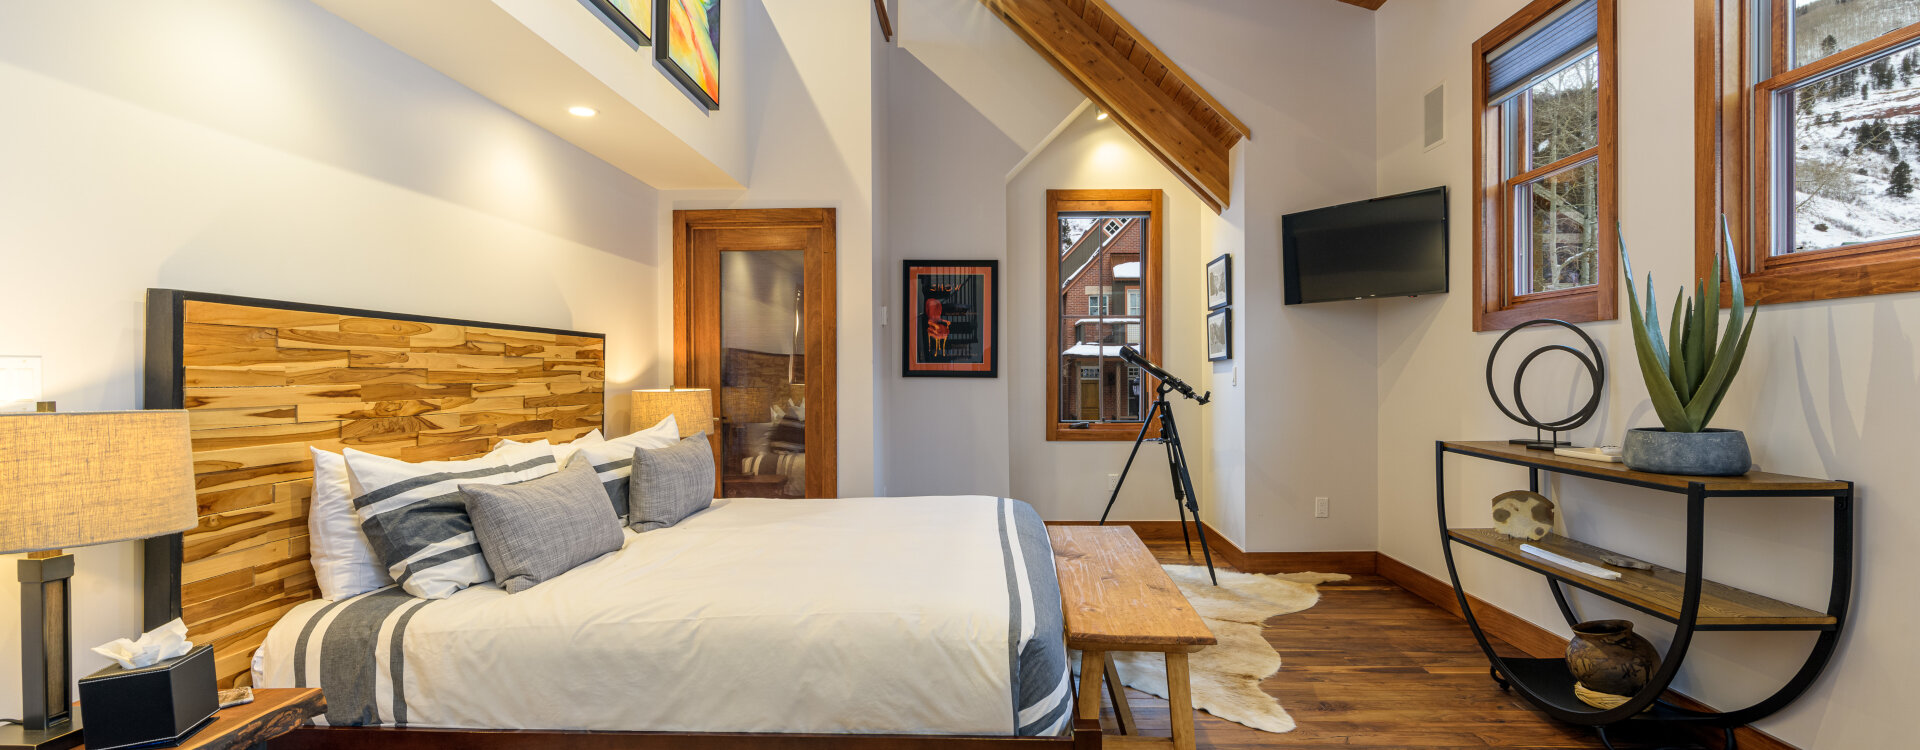 3.01-telluride-local-luxury-primary-bedroom-suite